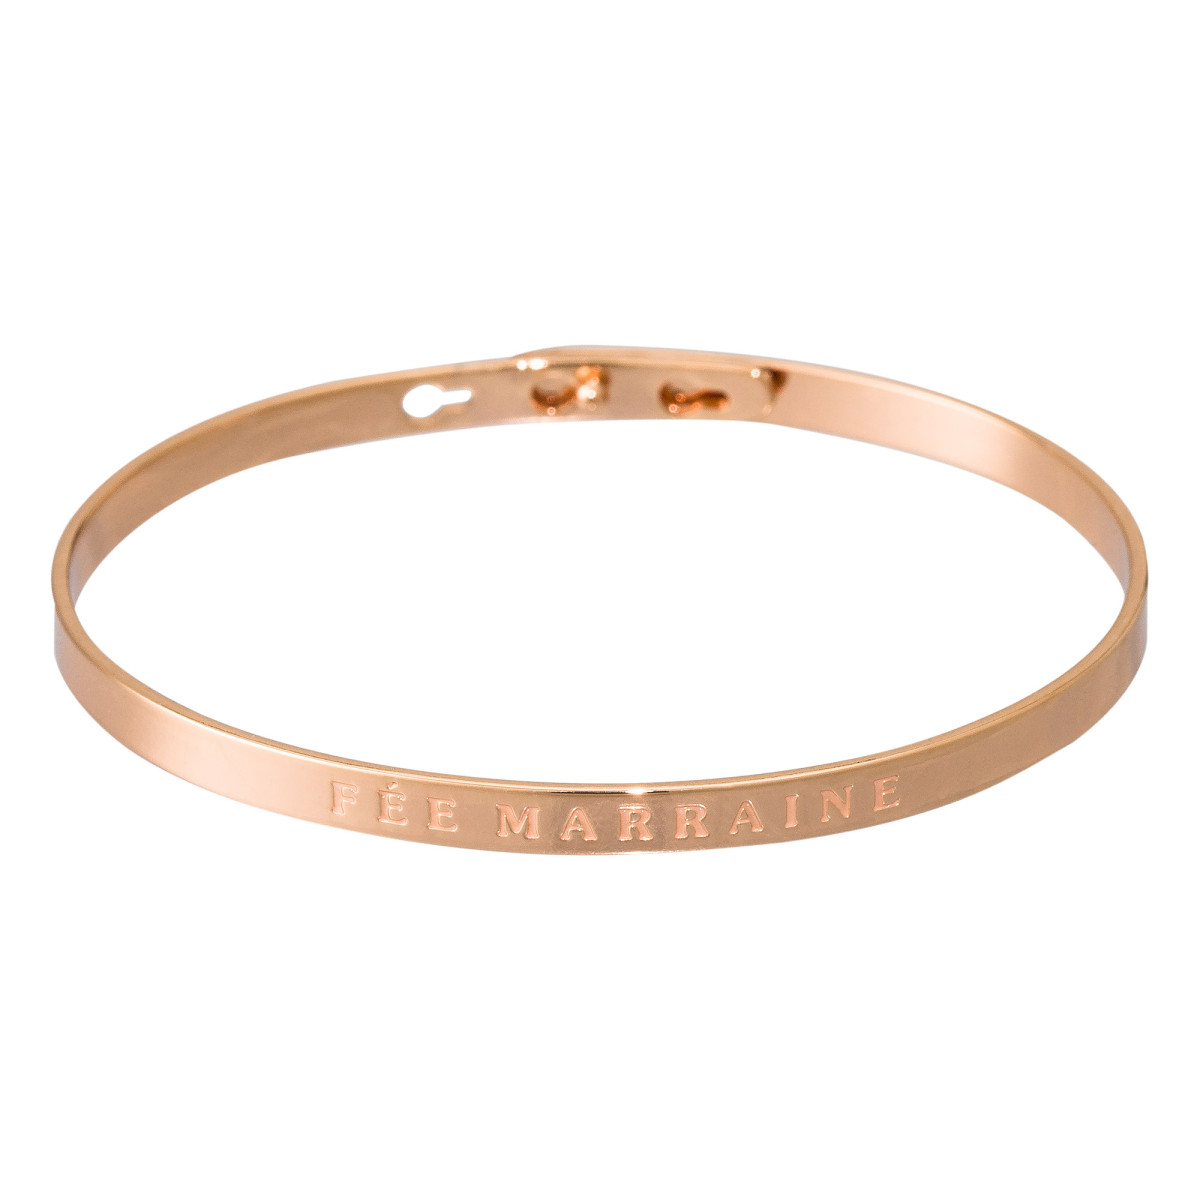 "FEE MARRAINE" bracelet jonc rosé à message